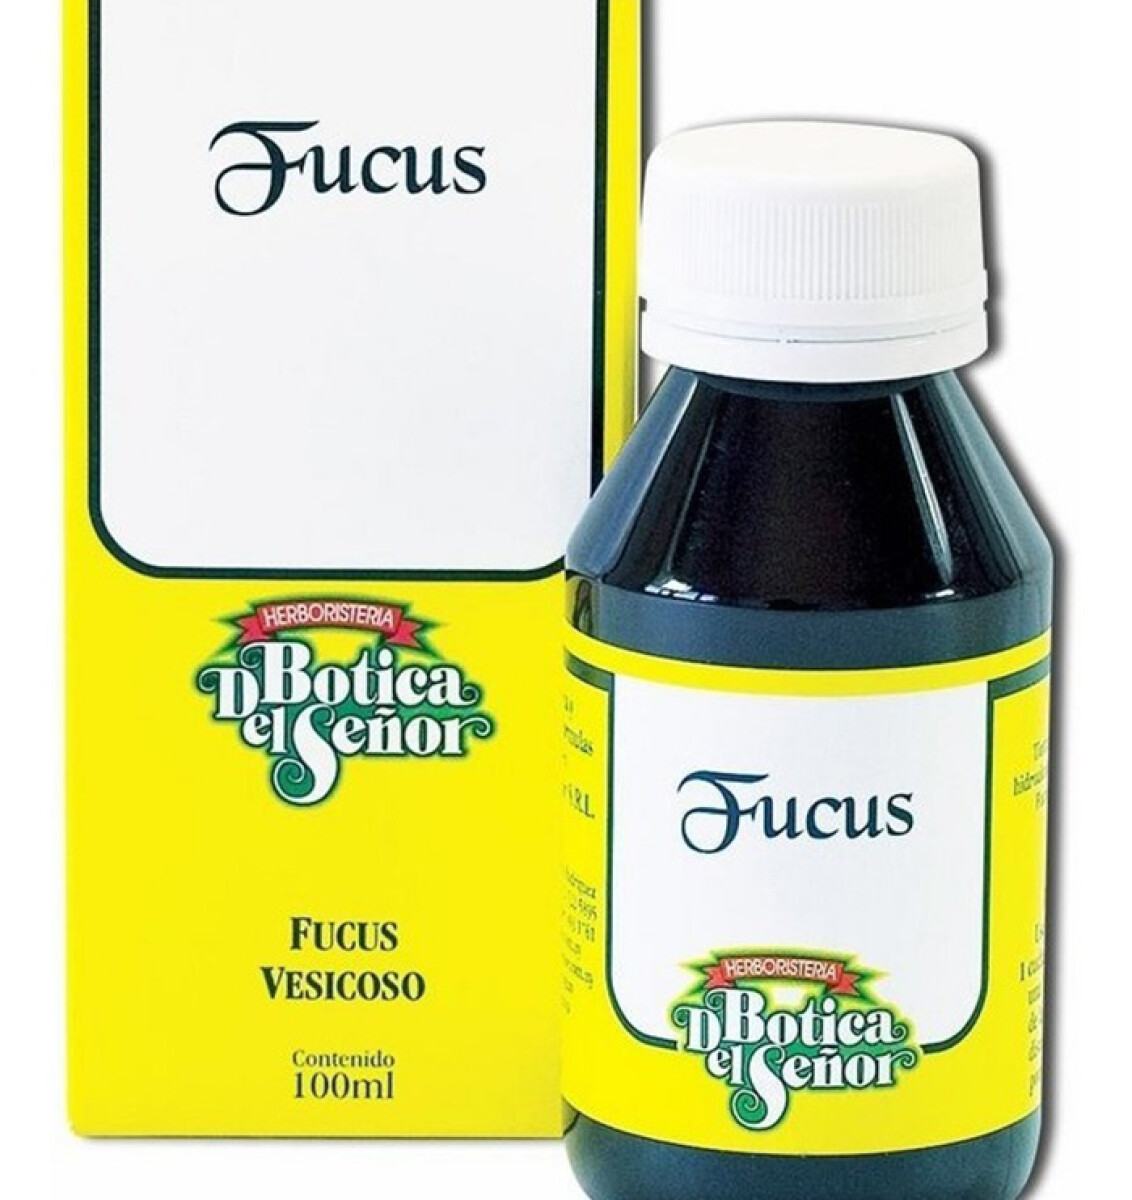 Tintura fitoextracto Botica del Señor - Fucus 100 ml 